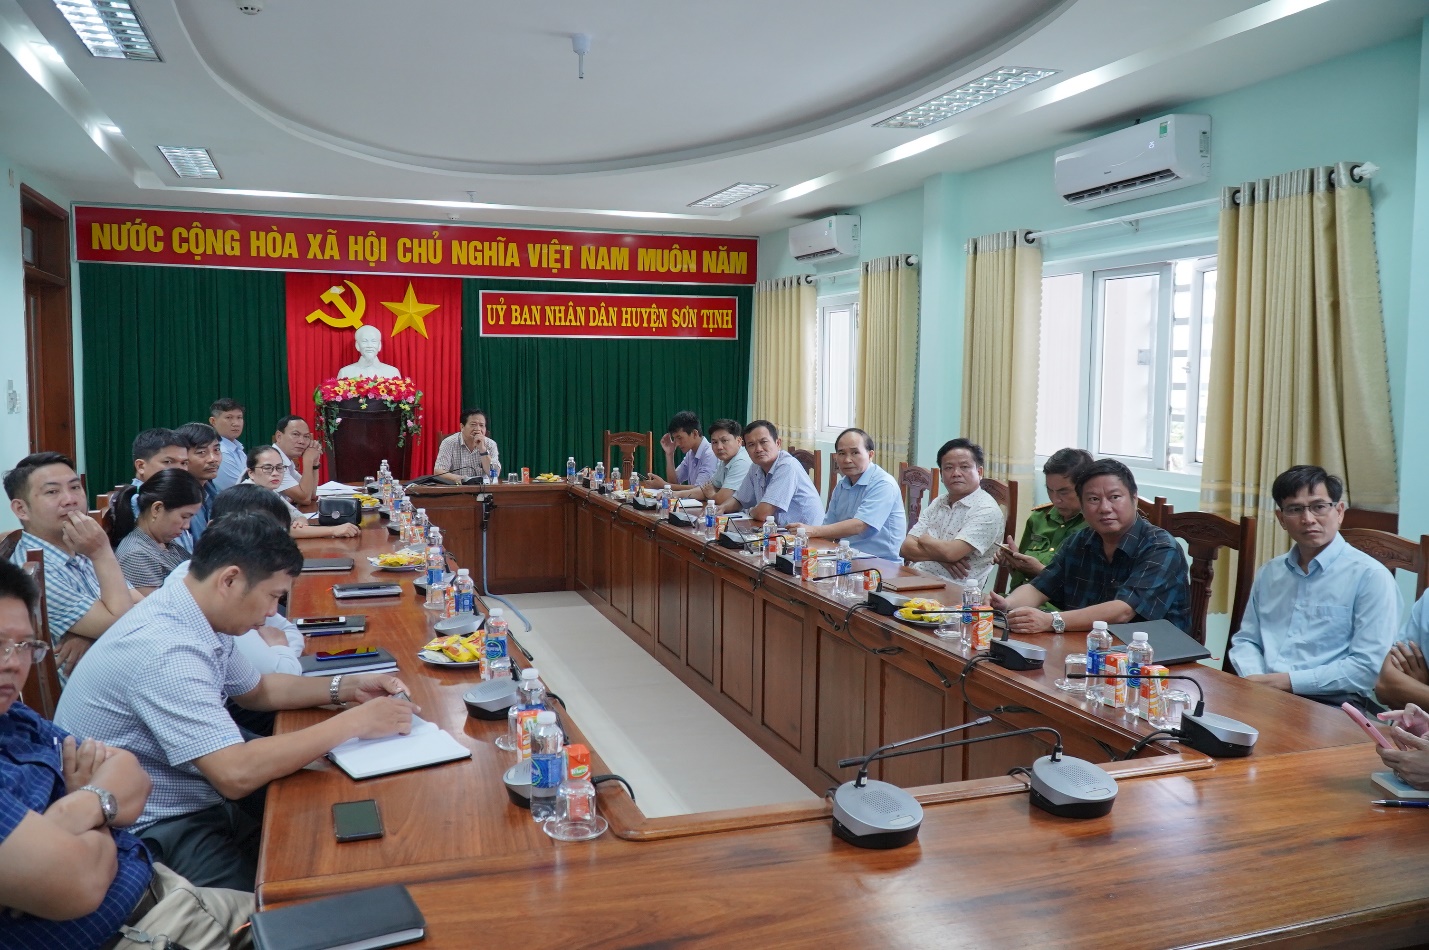 Sơn Tịnh: Tham dự Hội nghị trực tuyến toàn quốc về công tác cải cách hành chính và cung cấp dịch vụ công